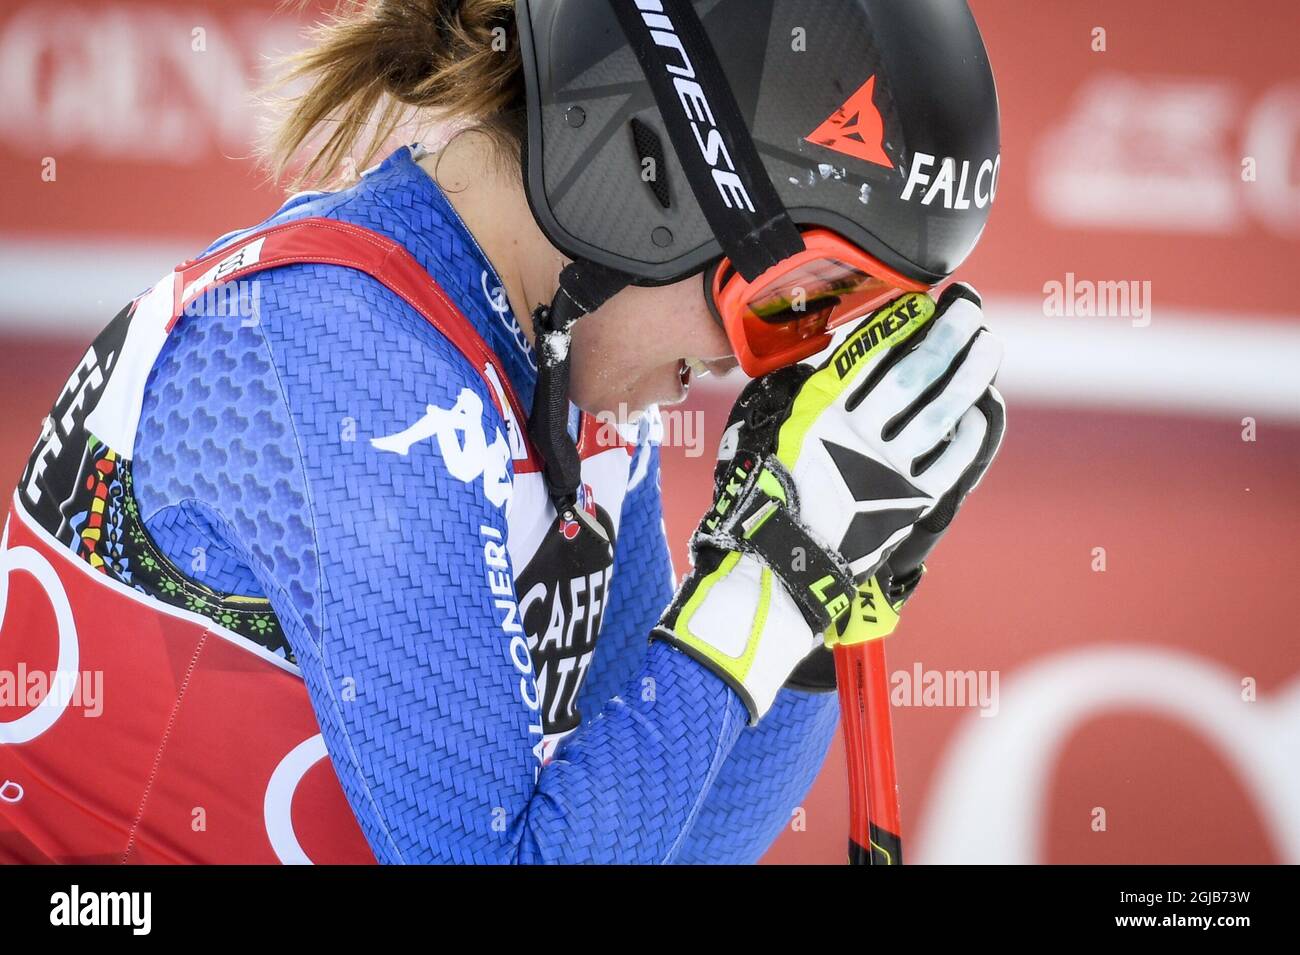 Sofia Goggia aus Italien reagiert nach ihrem Rennen beim FIS Downhill World Cup, im Damenfinale in are, Schweden, am 14. März 2018. Foto: Anders Wiklund / TT 10040 Stockfoto